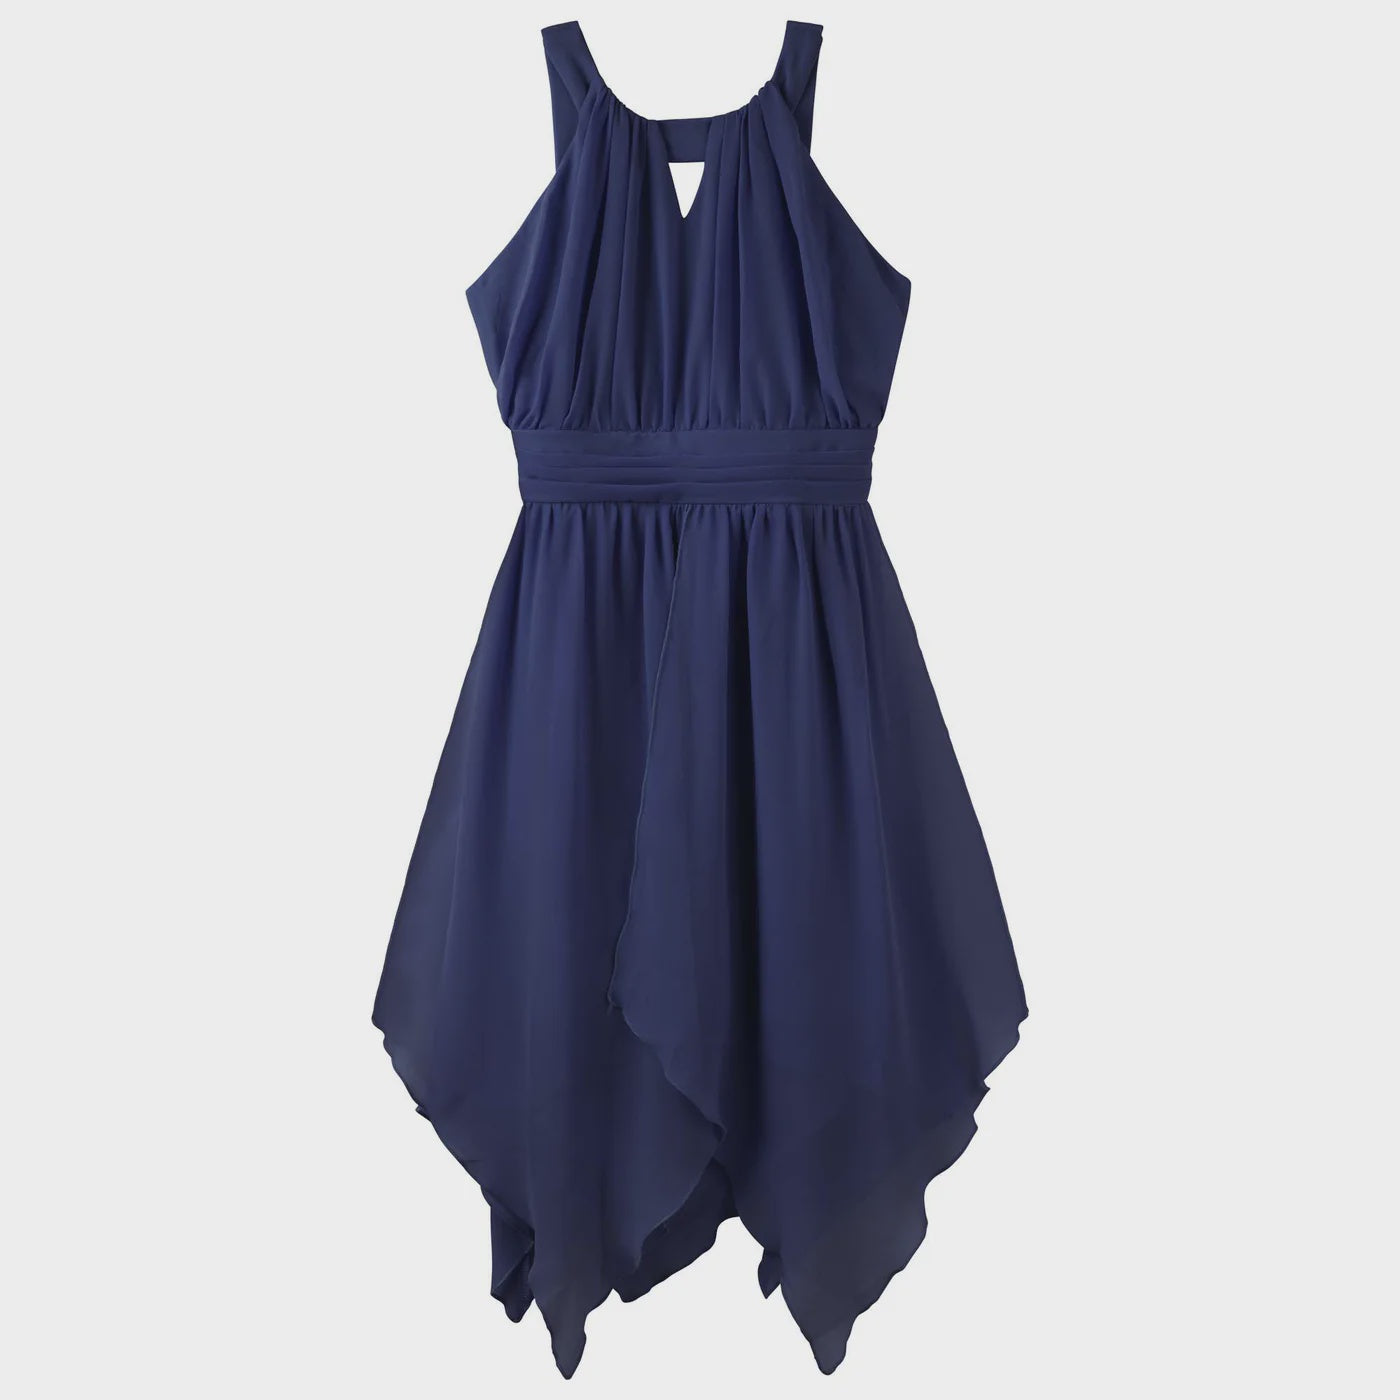 Designer Kidz | Angelene Panelled Dress - Navy